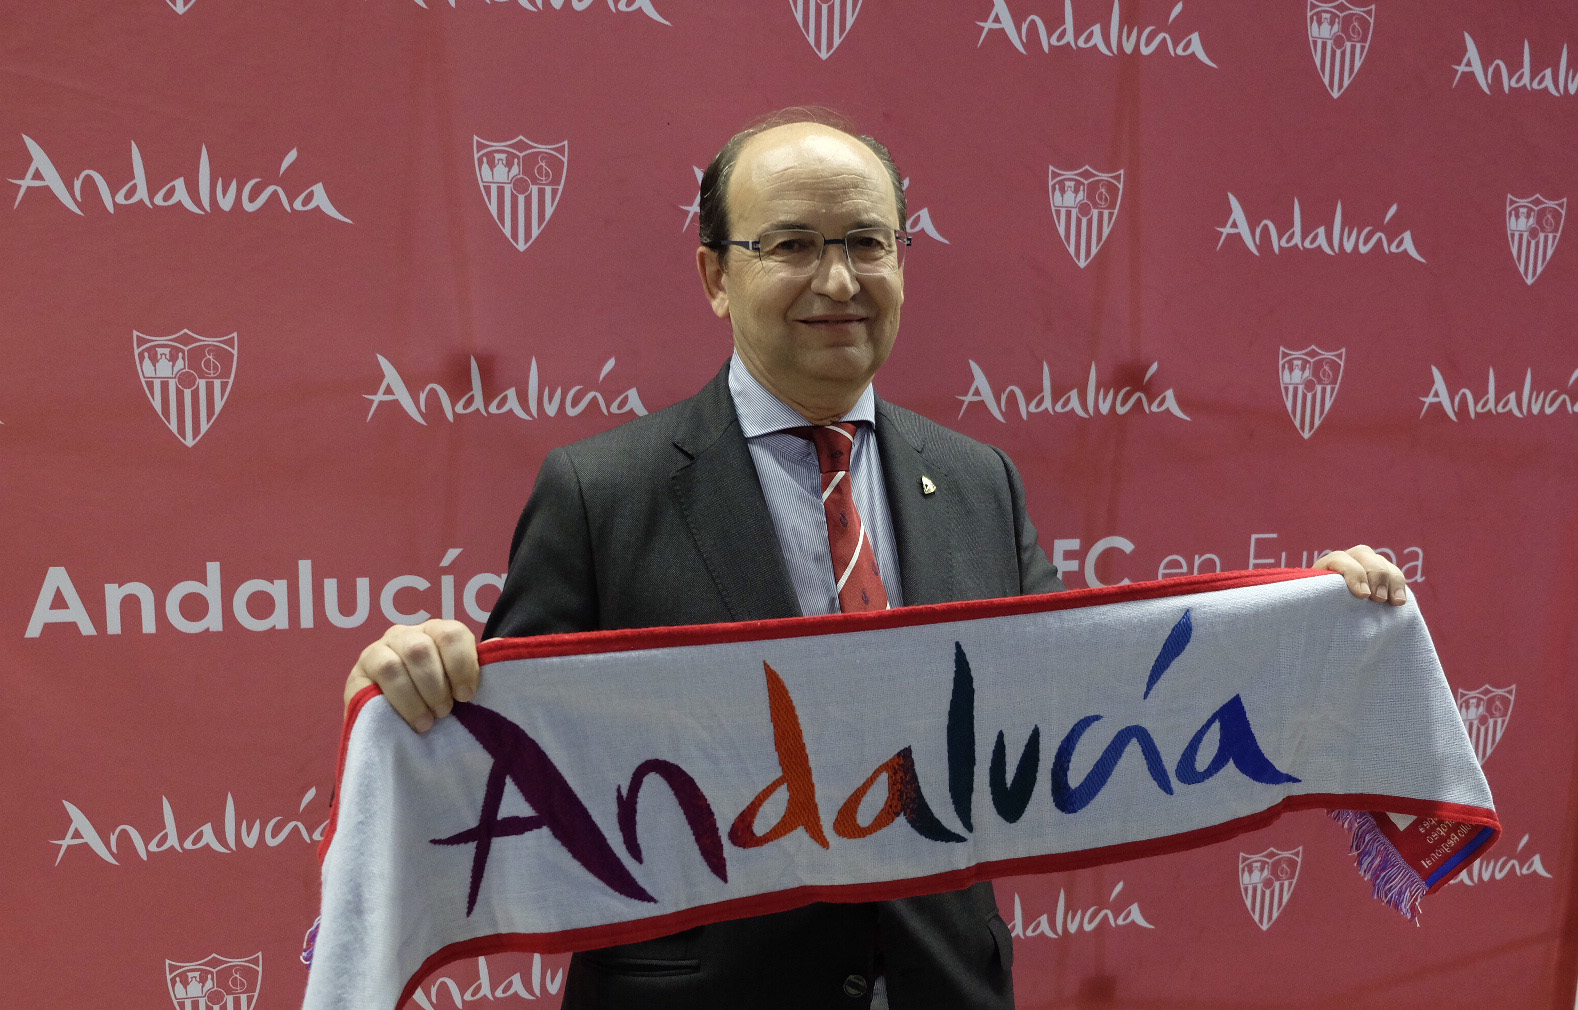 Imagen del presidente luciendo una bufanda de Andalucía